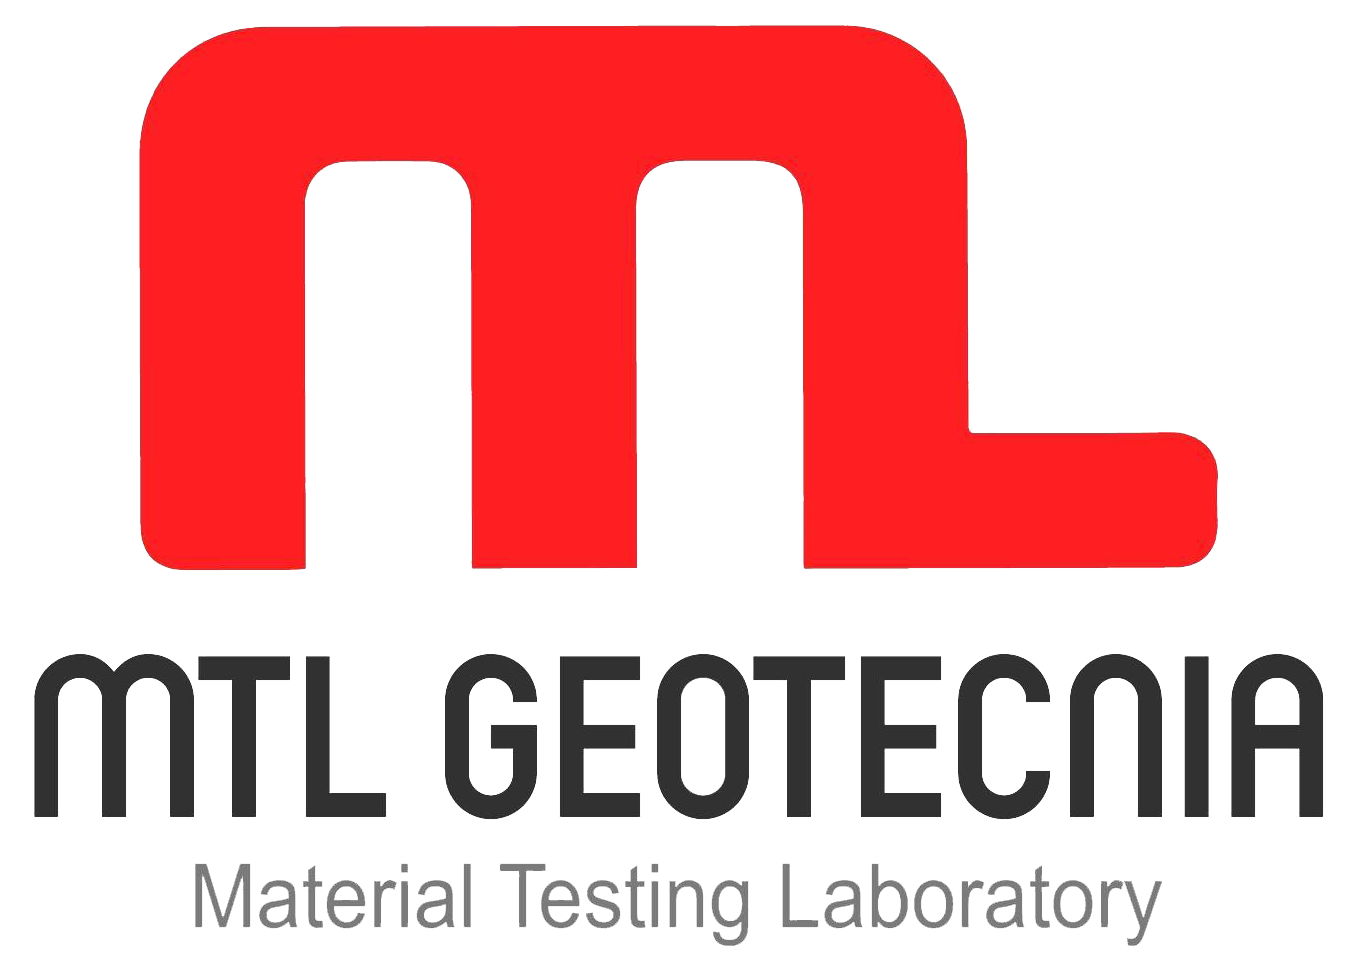 Laboratorio de suelos mtl geotecinasac